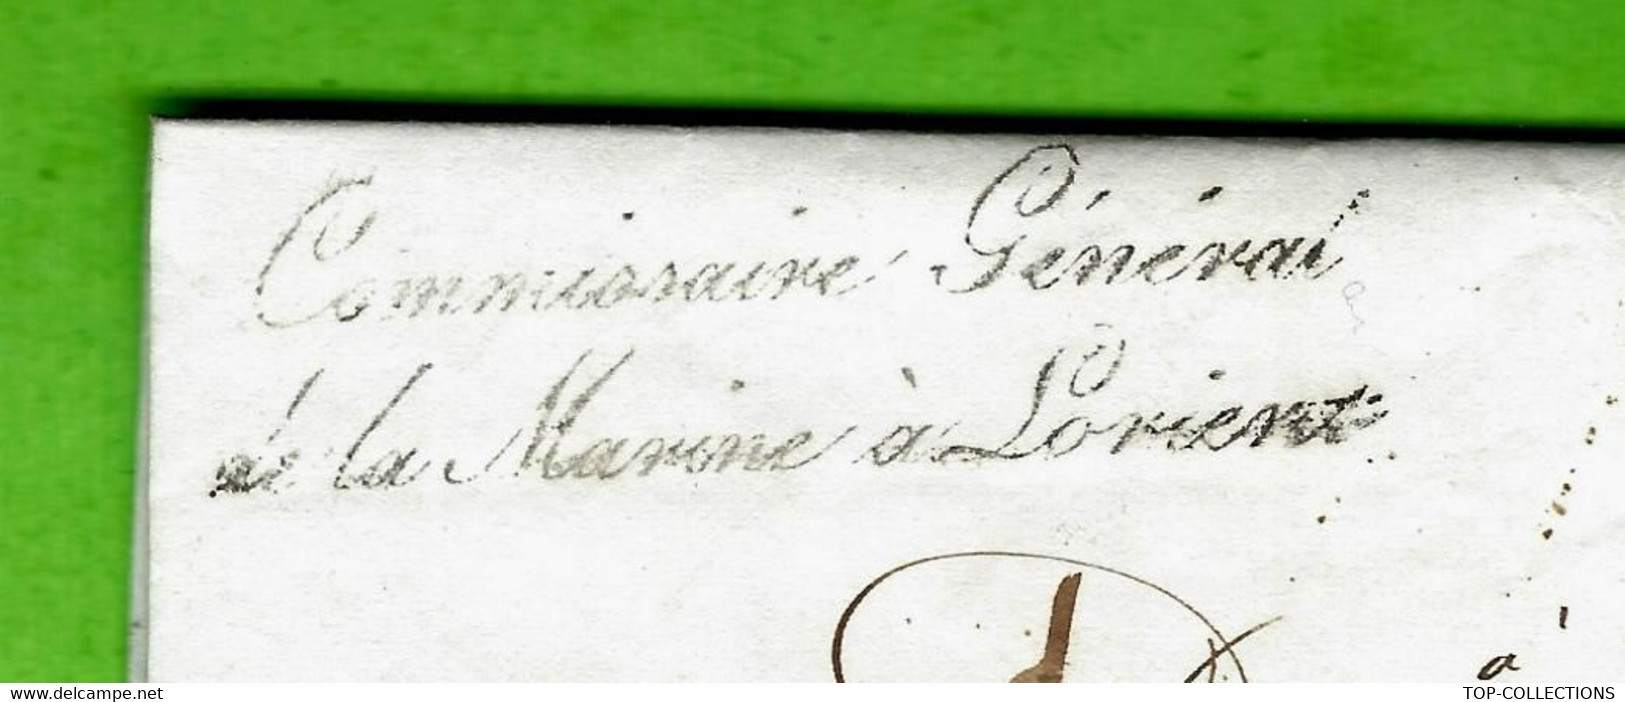 1841  Lorient Commisaire Général de  Marine > Desvarennes fournisseur bois  marine  Angers Maine et Loire BOIS UKRAINE